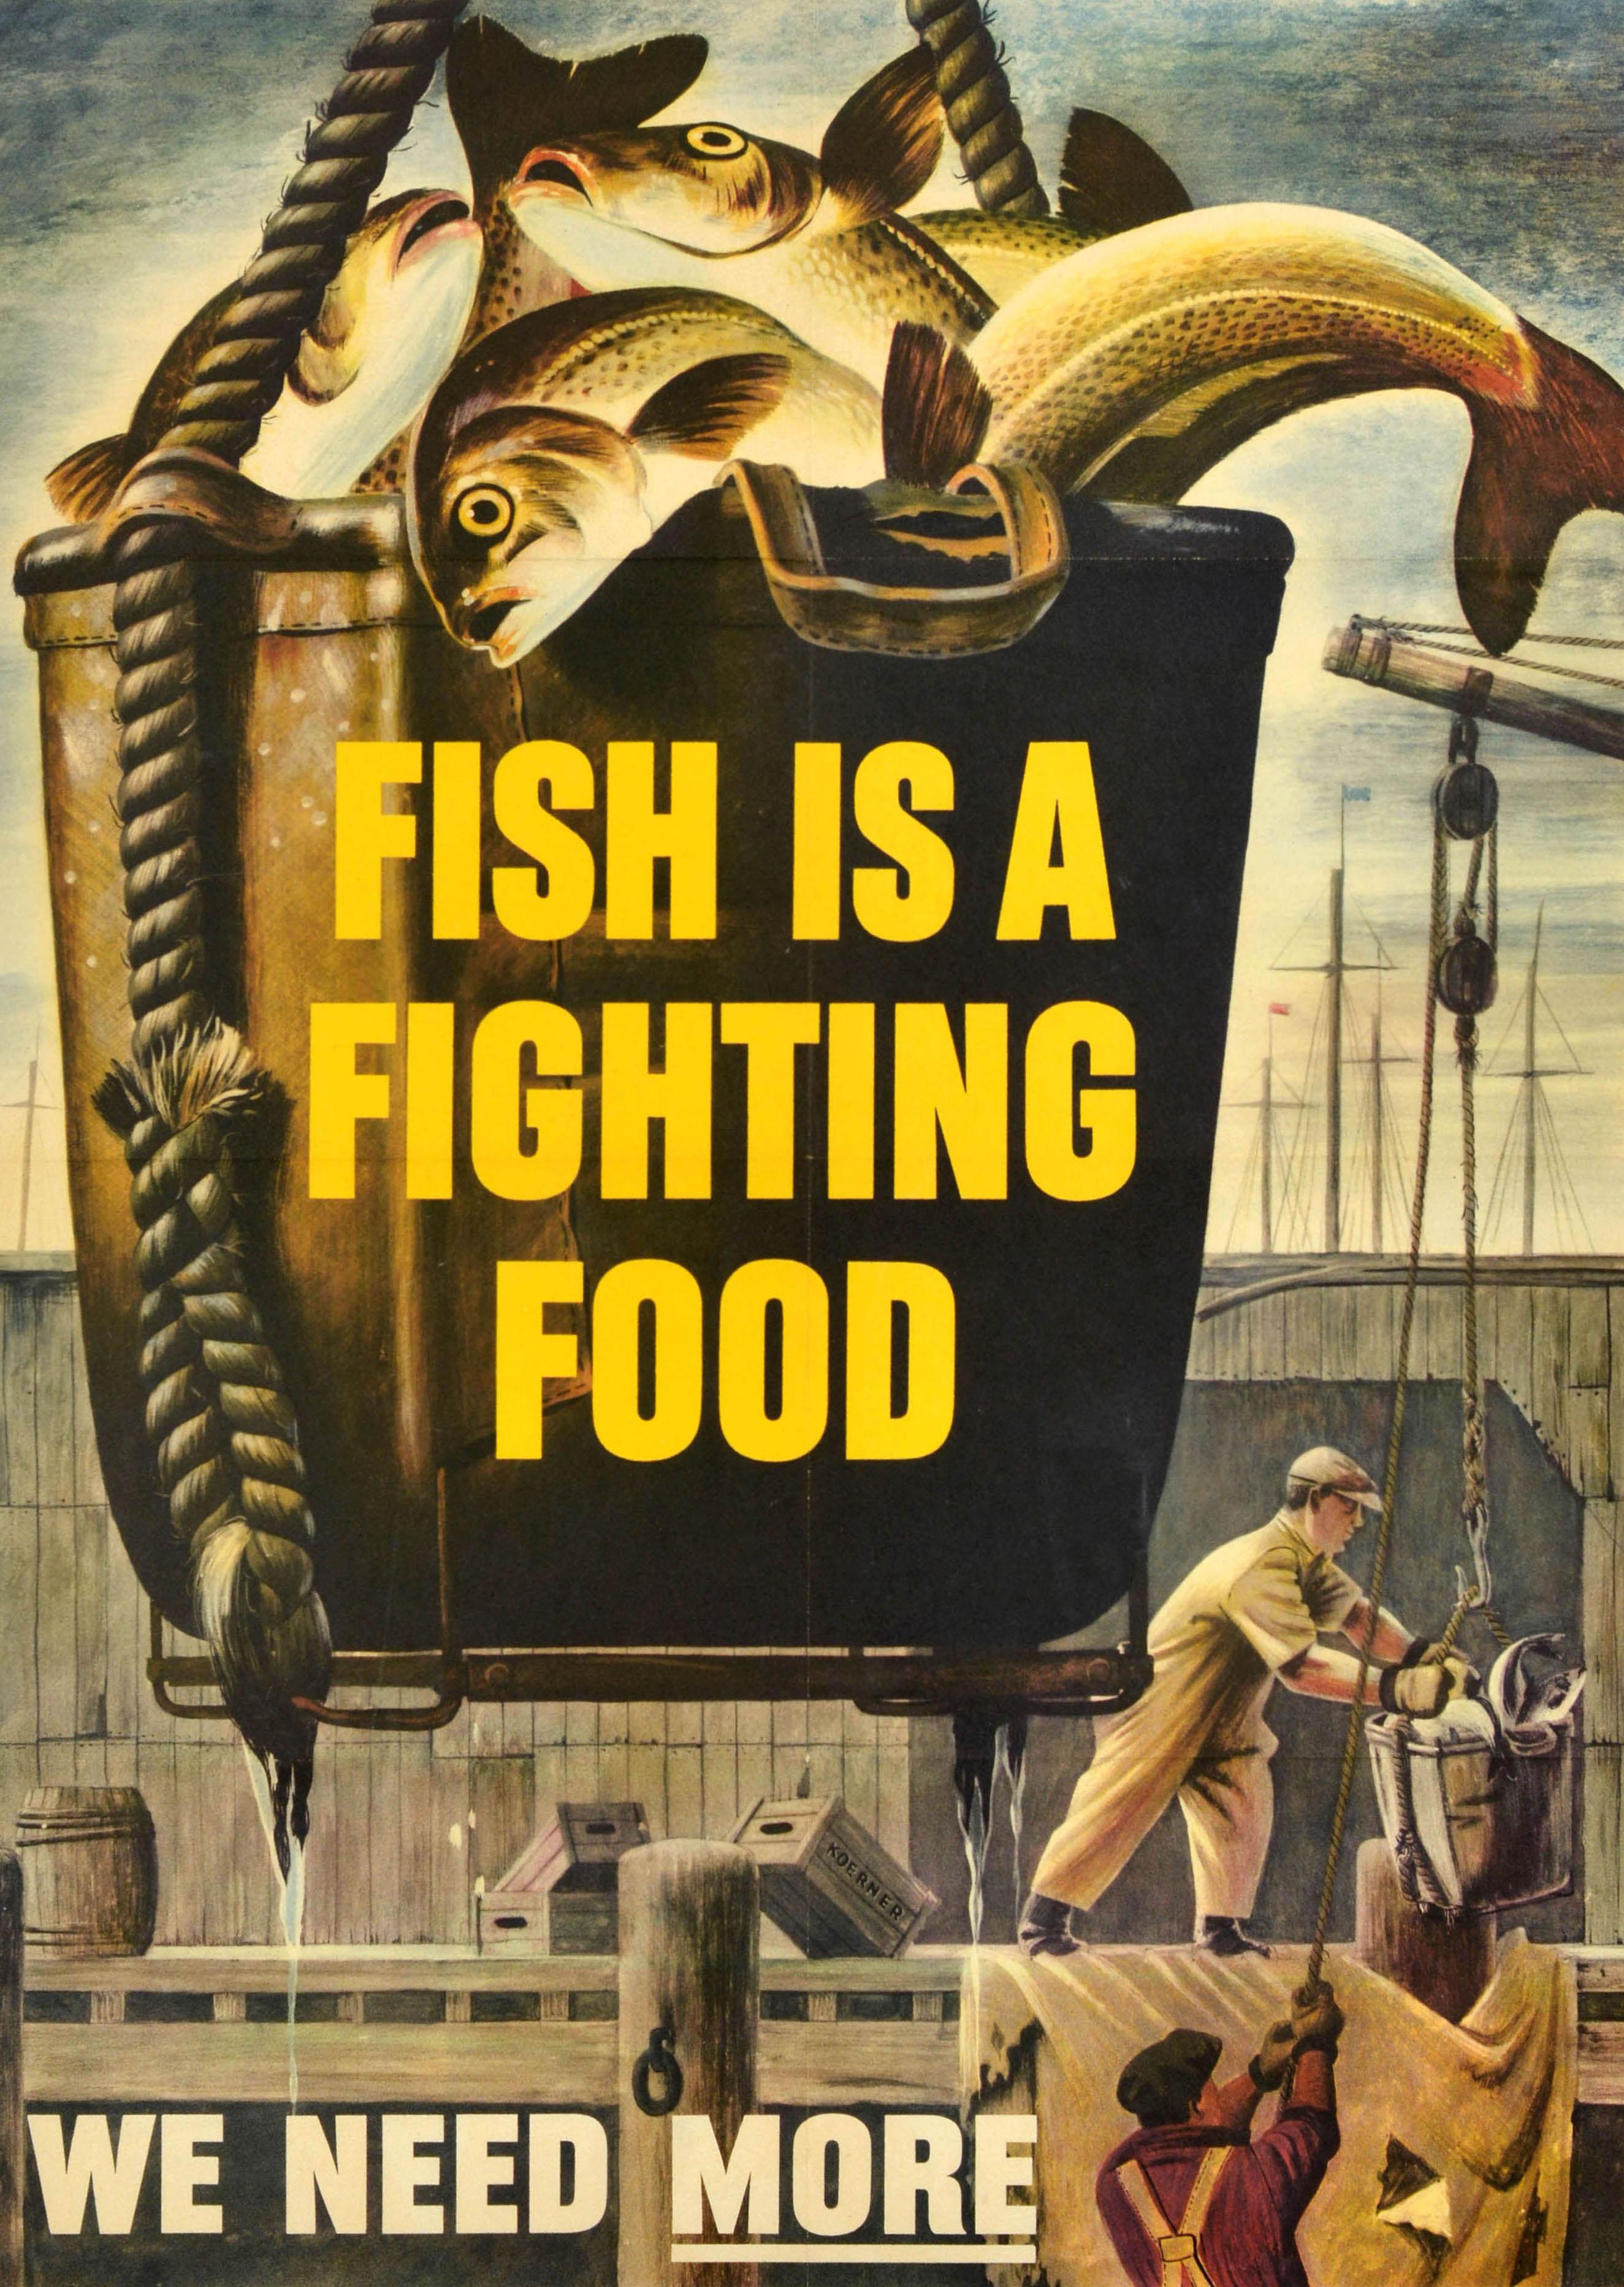 Affiche originale d'époque du front intérieur de la Seconde Guerre mondiale - Fish is a fighting food We need more - représentant une prise de poisson tirée dans un seau par des pêcheurs travaillant sur un quai en bois avec des mâts visibles à